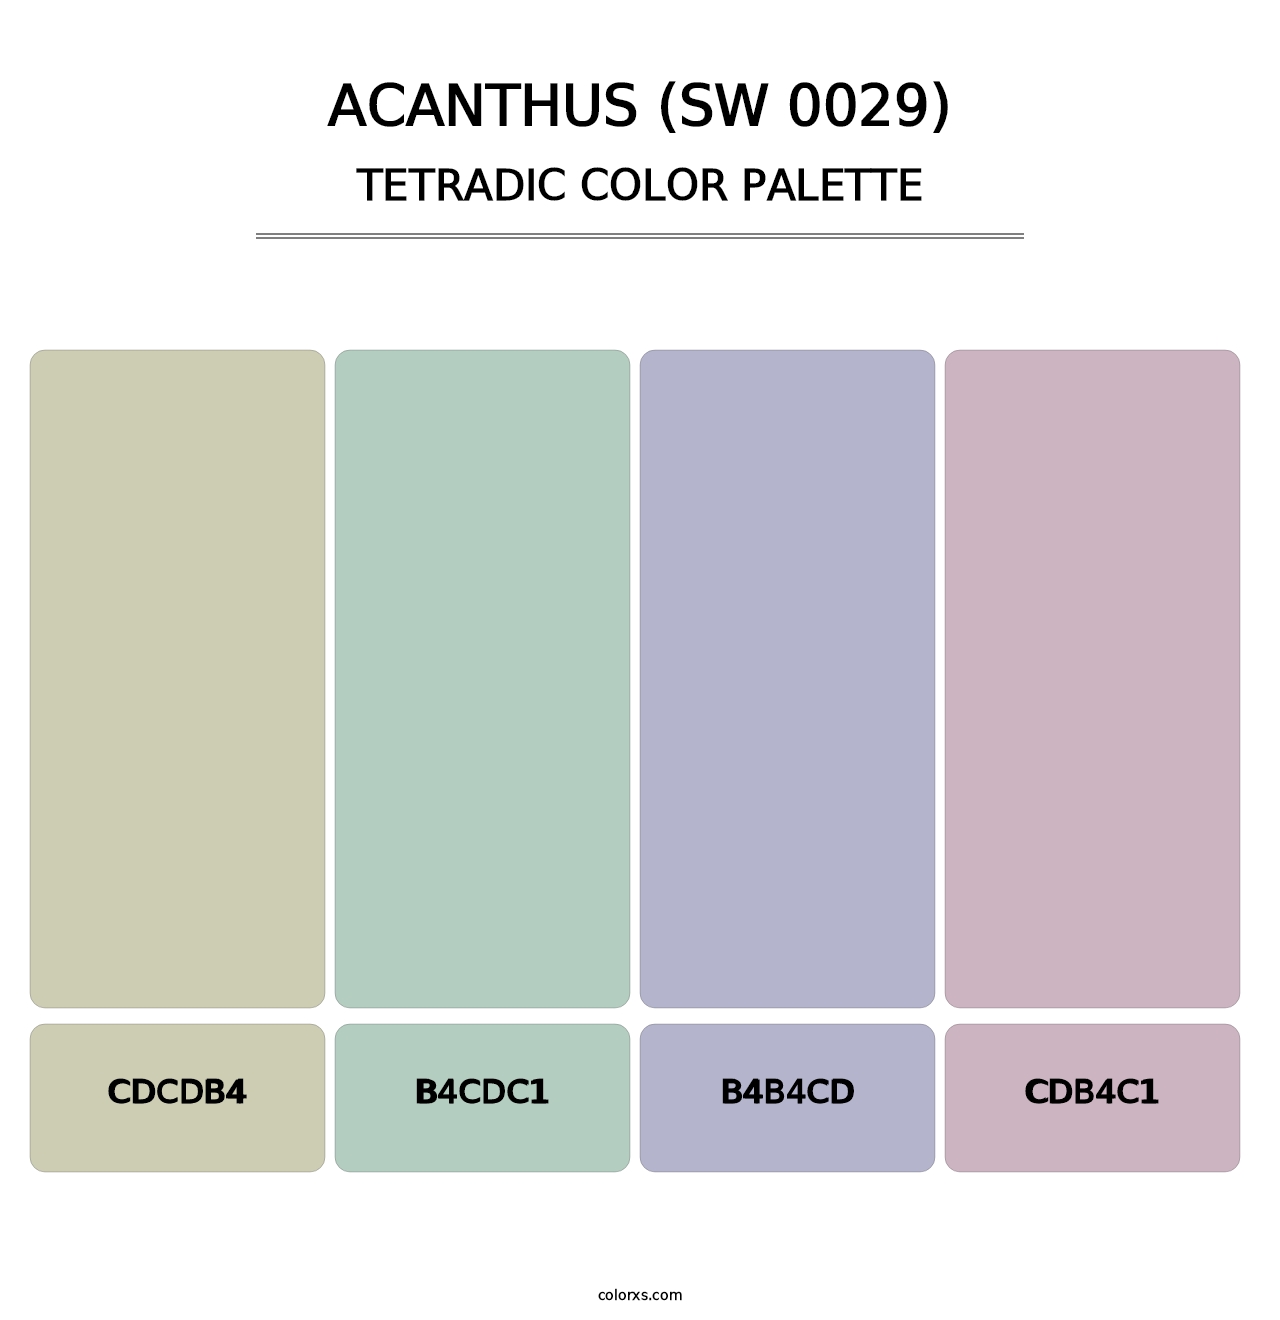 Acanthus (SW 0029) - Tetradic Color Palette